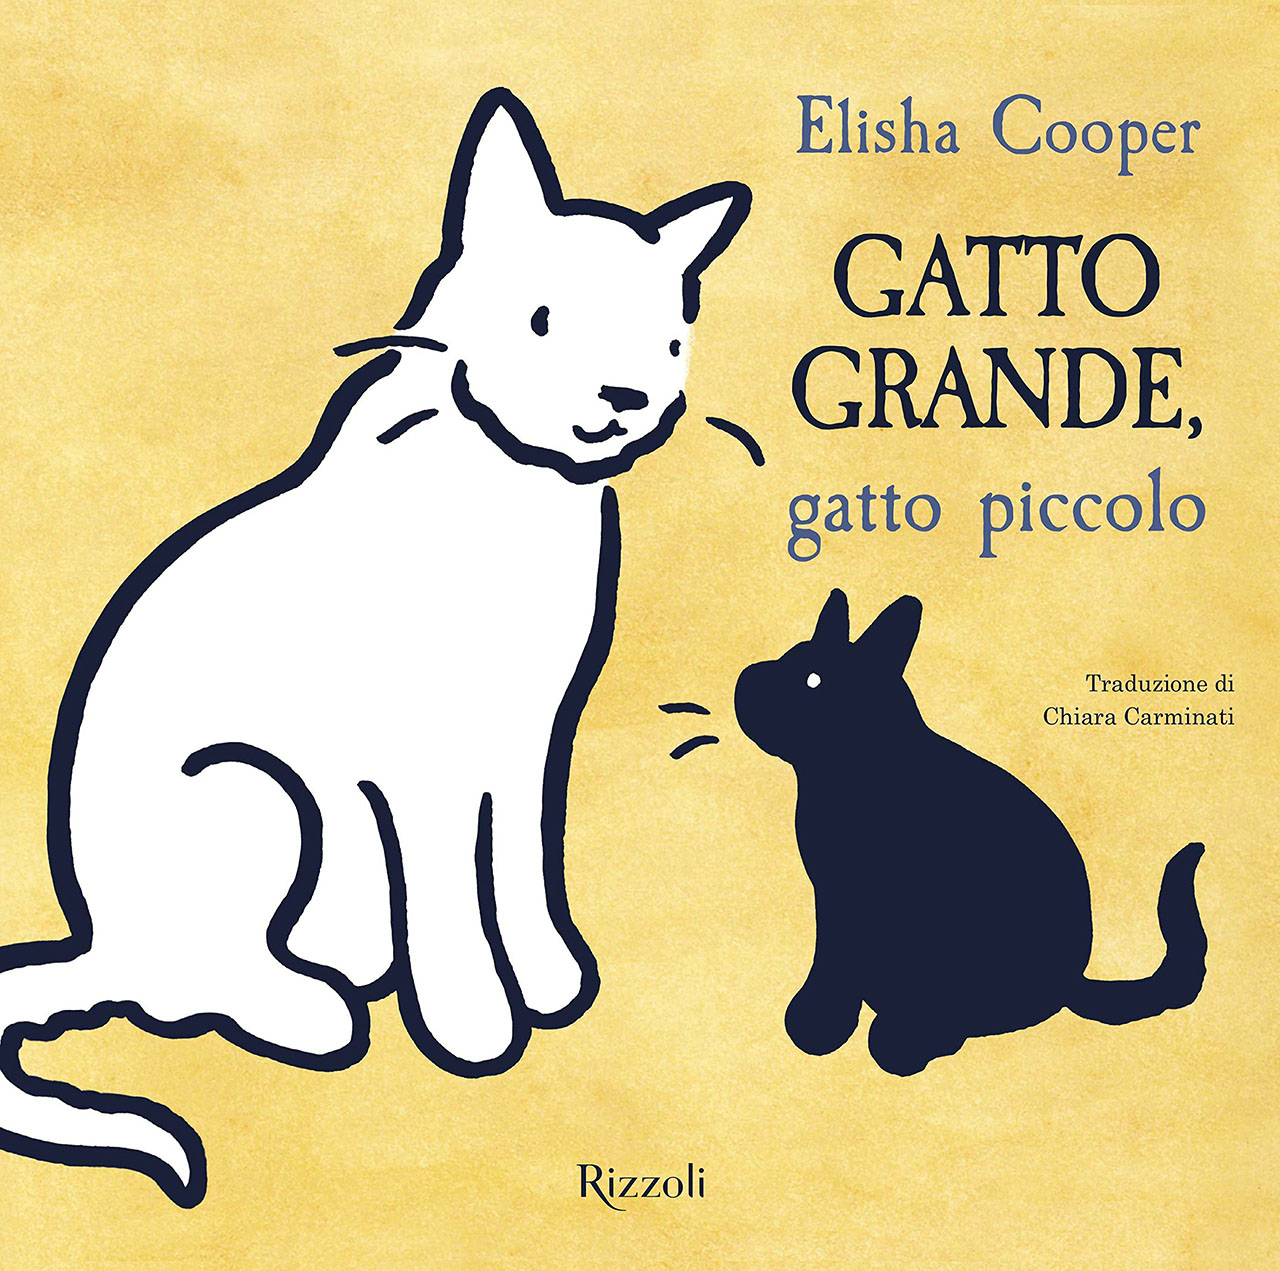 Gatto grande, gatto piccolo - Elisha Cooper